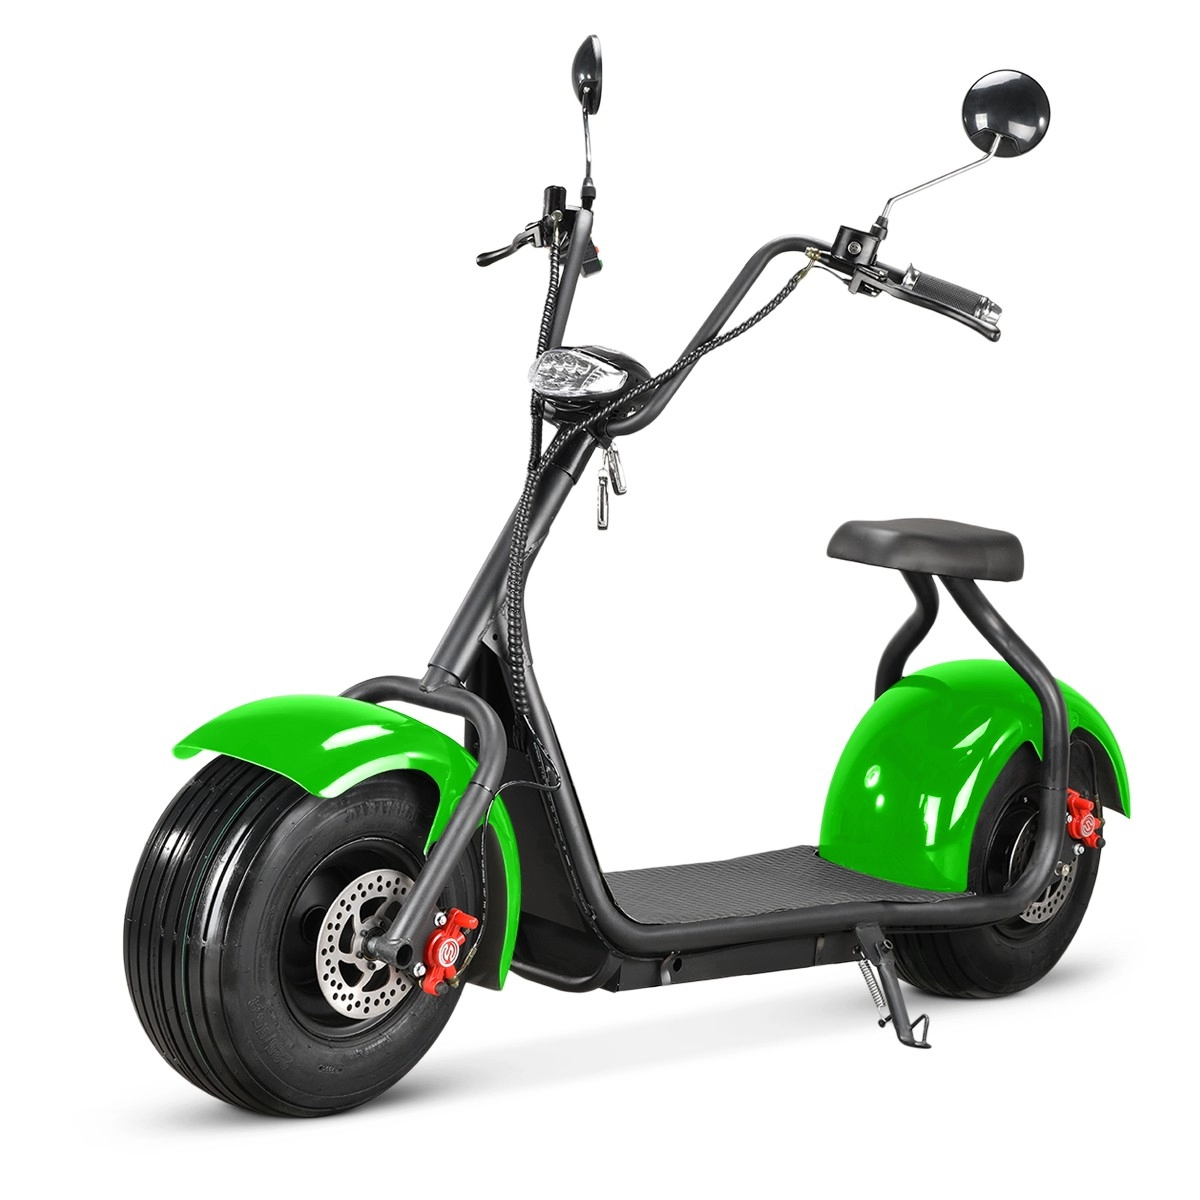 Scooter Citycoco elétrico adulto 1500w CE com bateria de íon de lítio